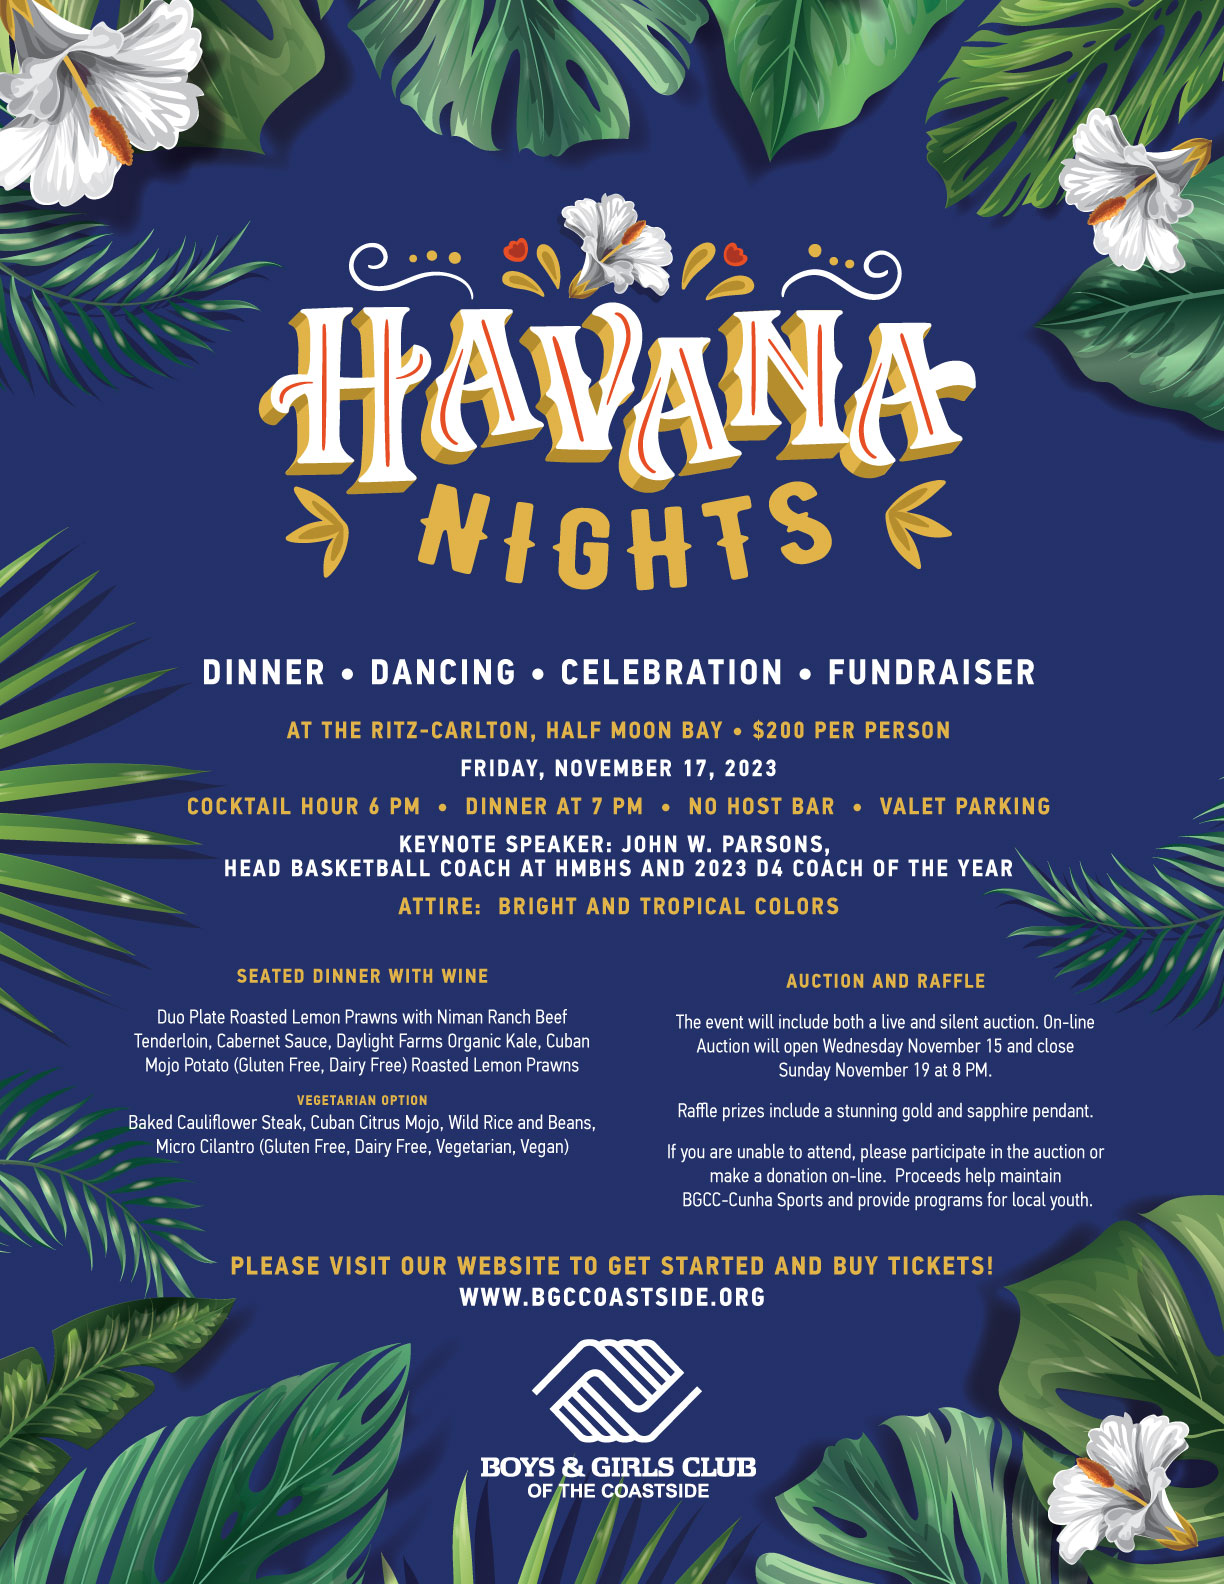 Havana Nights - Havana Nights added a new photo.